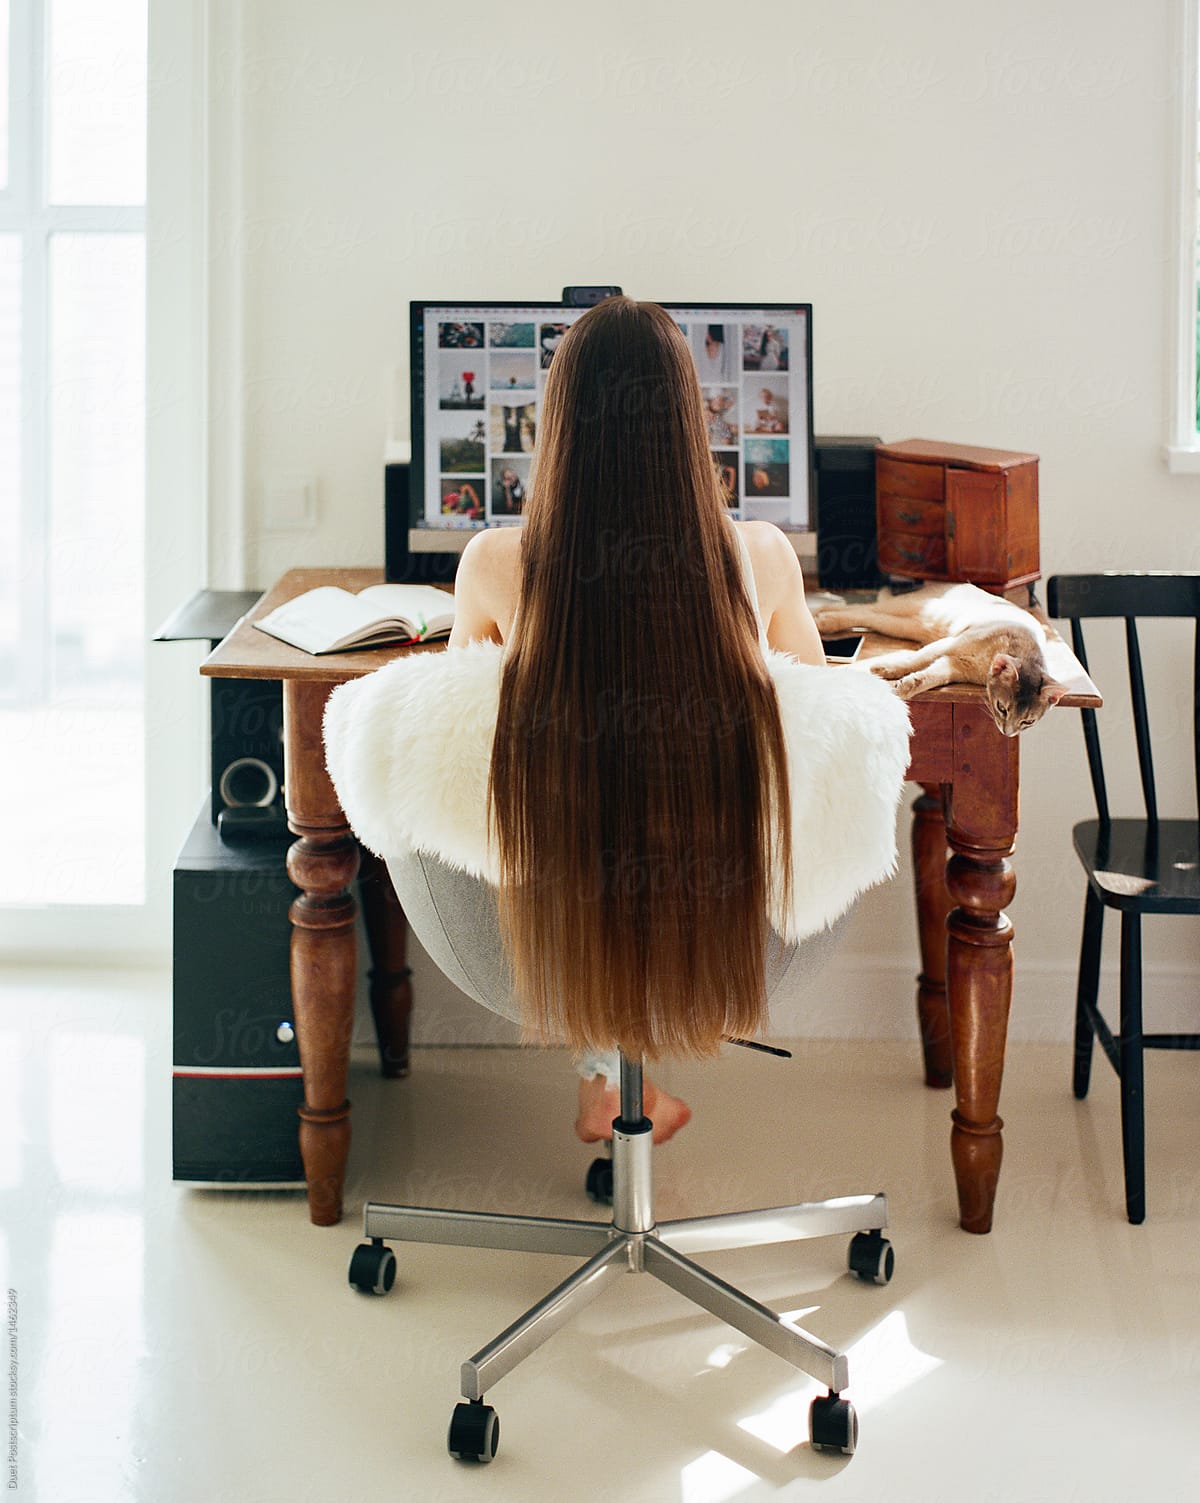 Woman sitting at computer